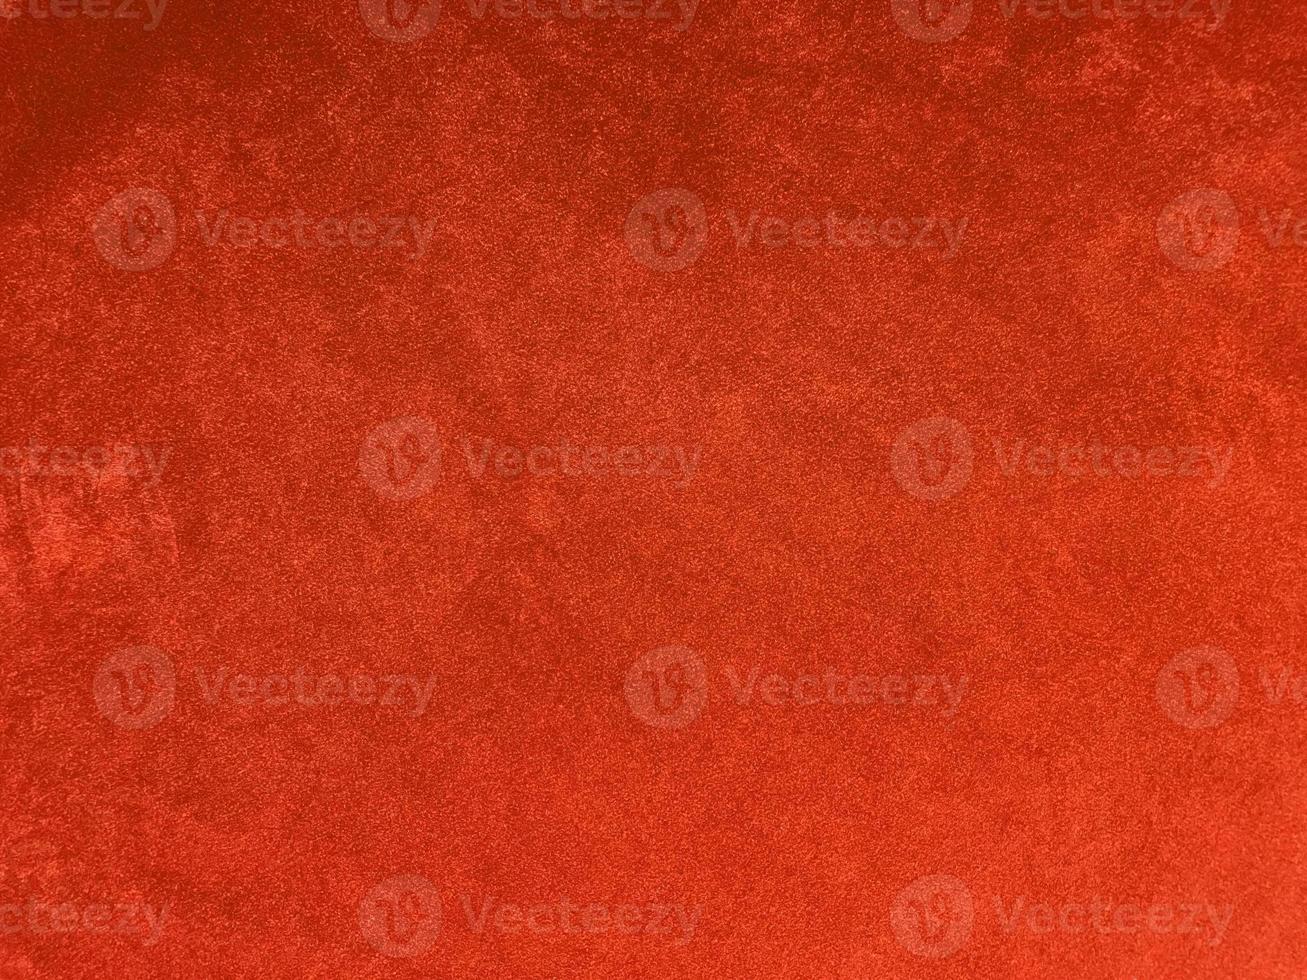 orange Samtstoffstruktur als Hintergrund verwendet. leerer orangefarbener Stoffhintergrund aus weichem und glattem Textilmaterial. es ist platz für text.. foto